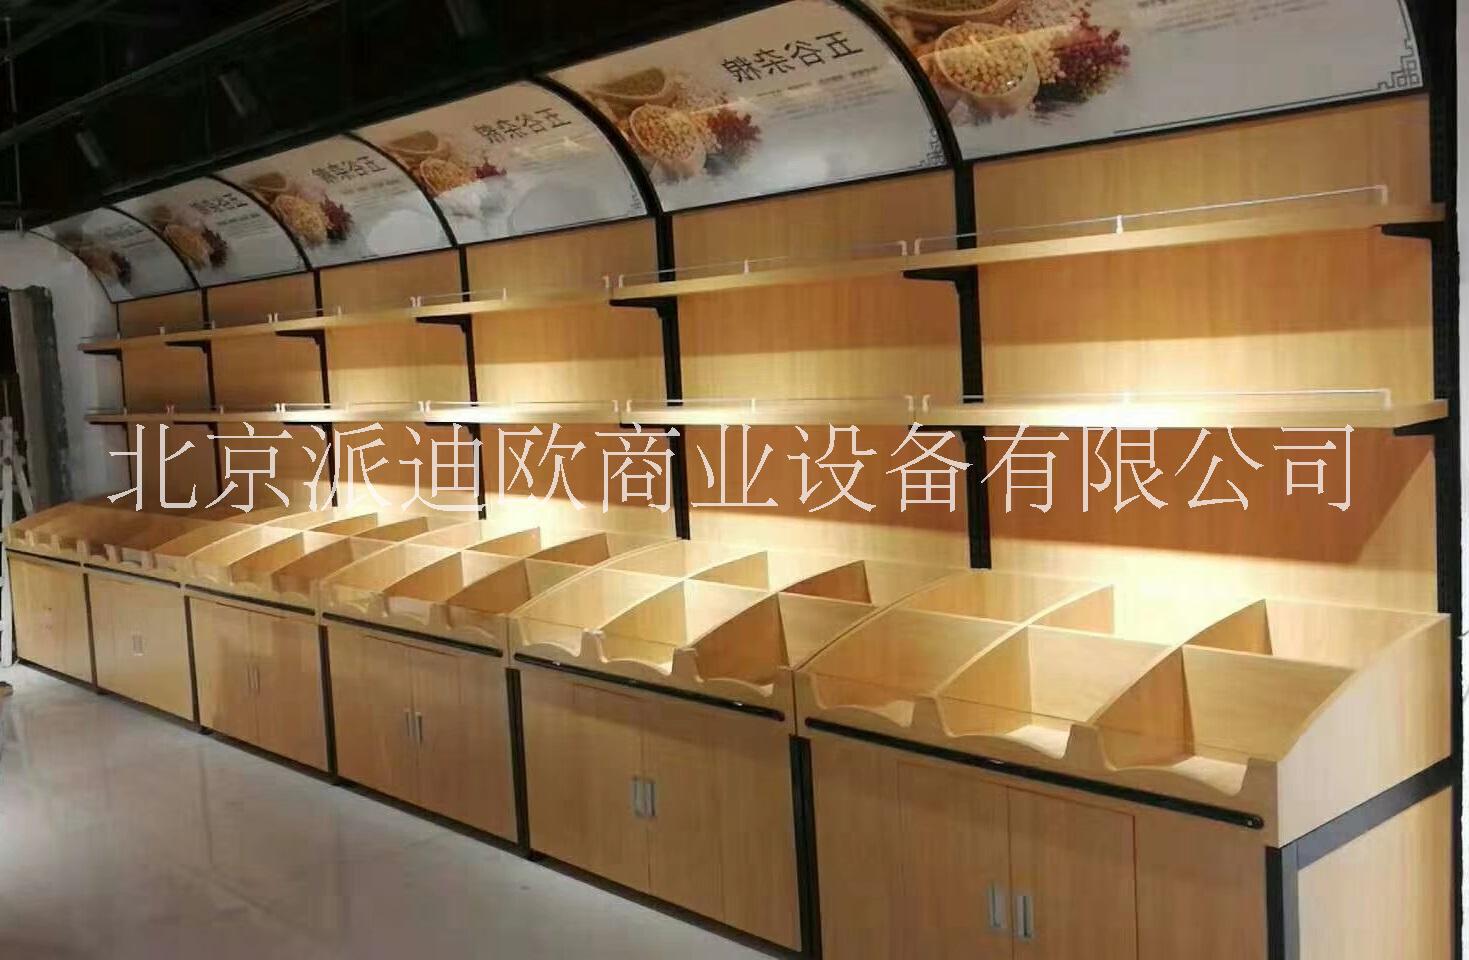 北京市超市货架蔬菜水果货架仓储货架厂家